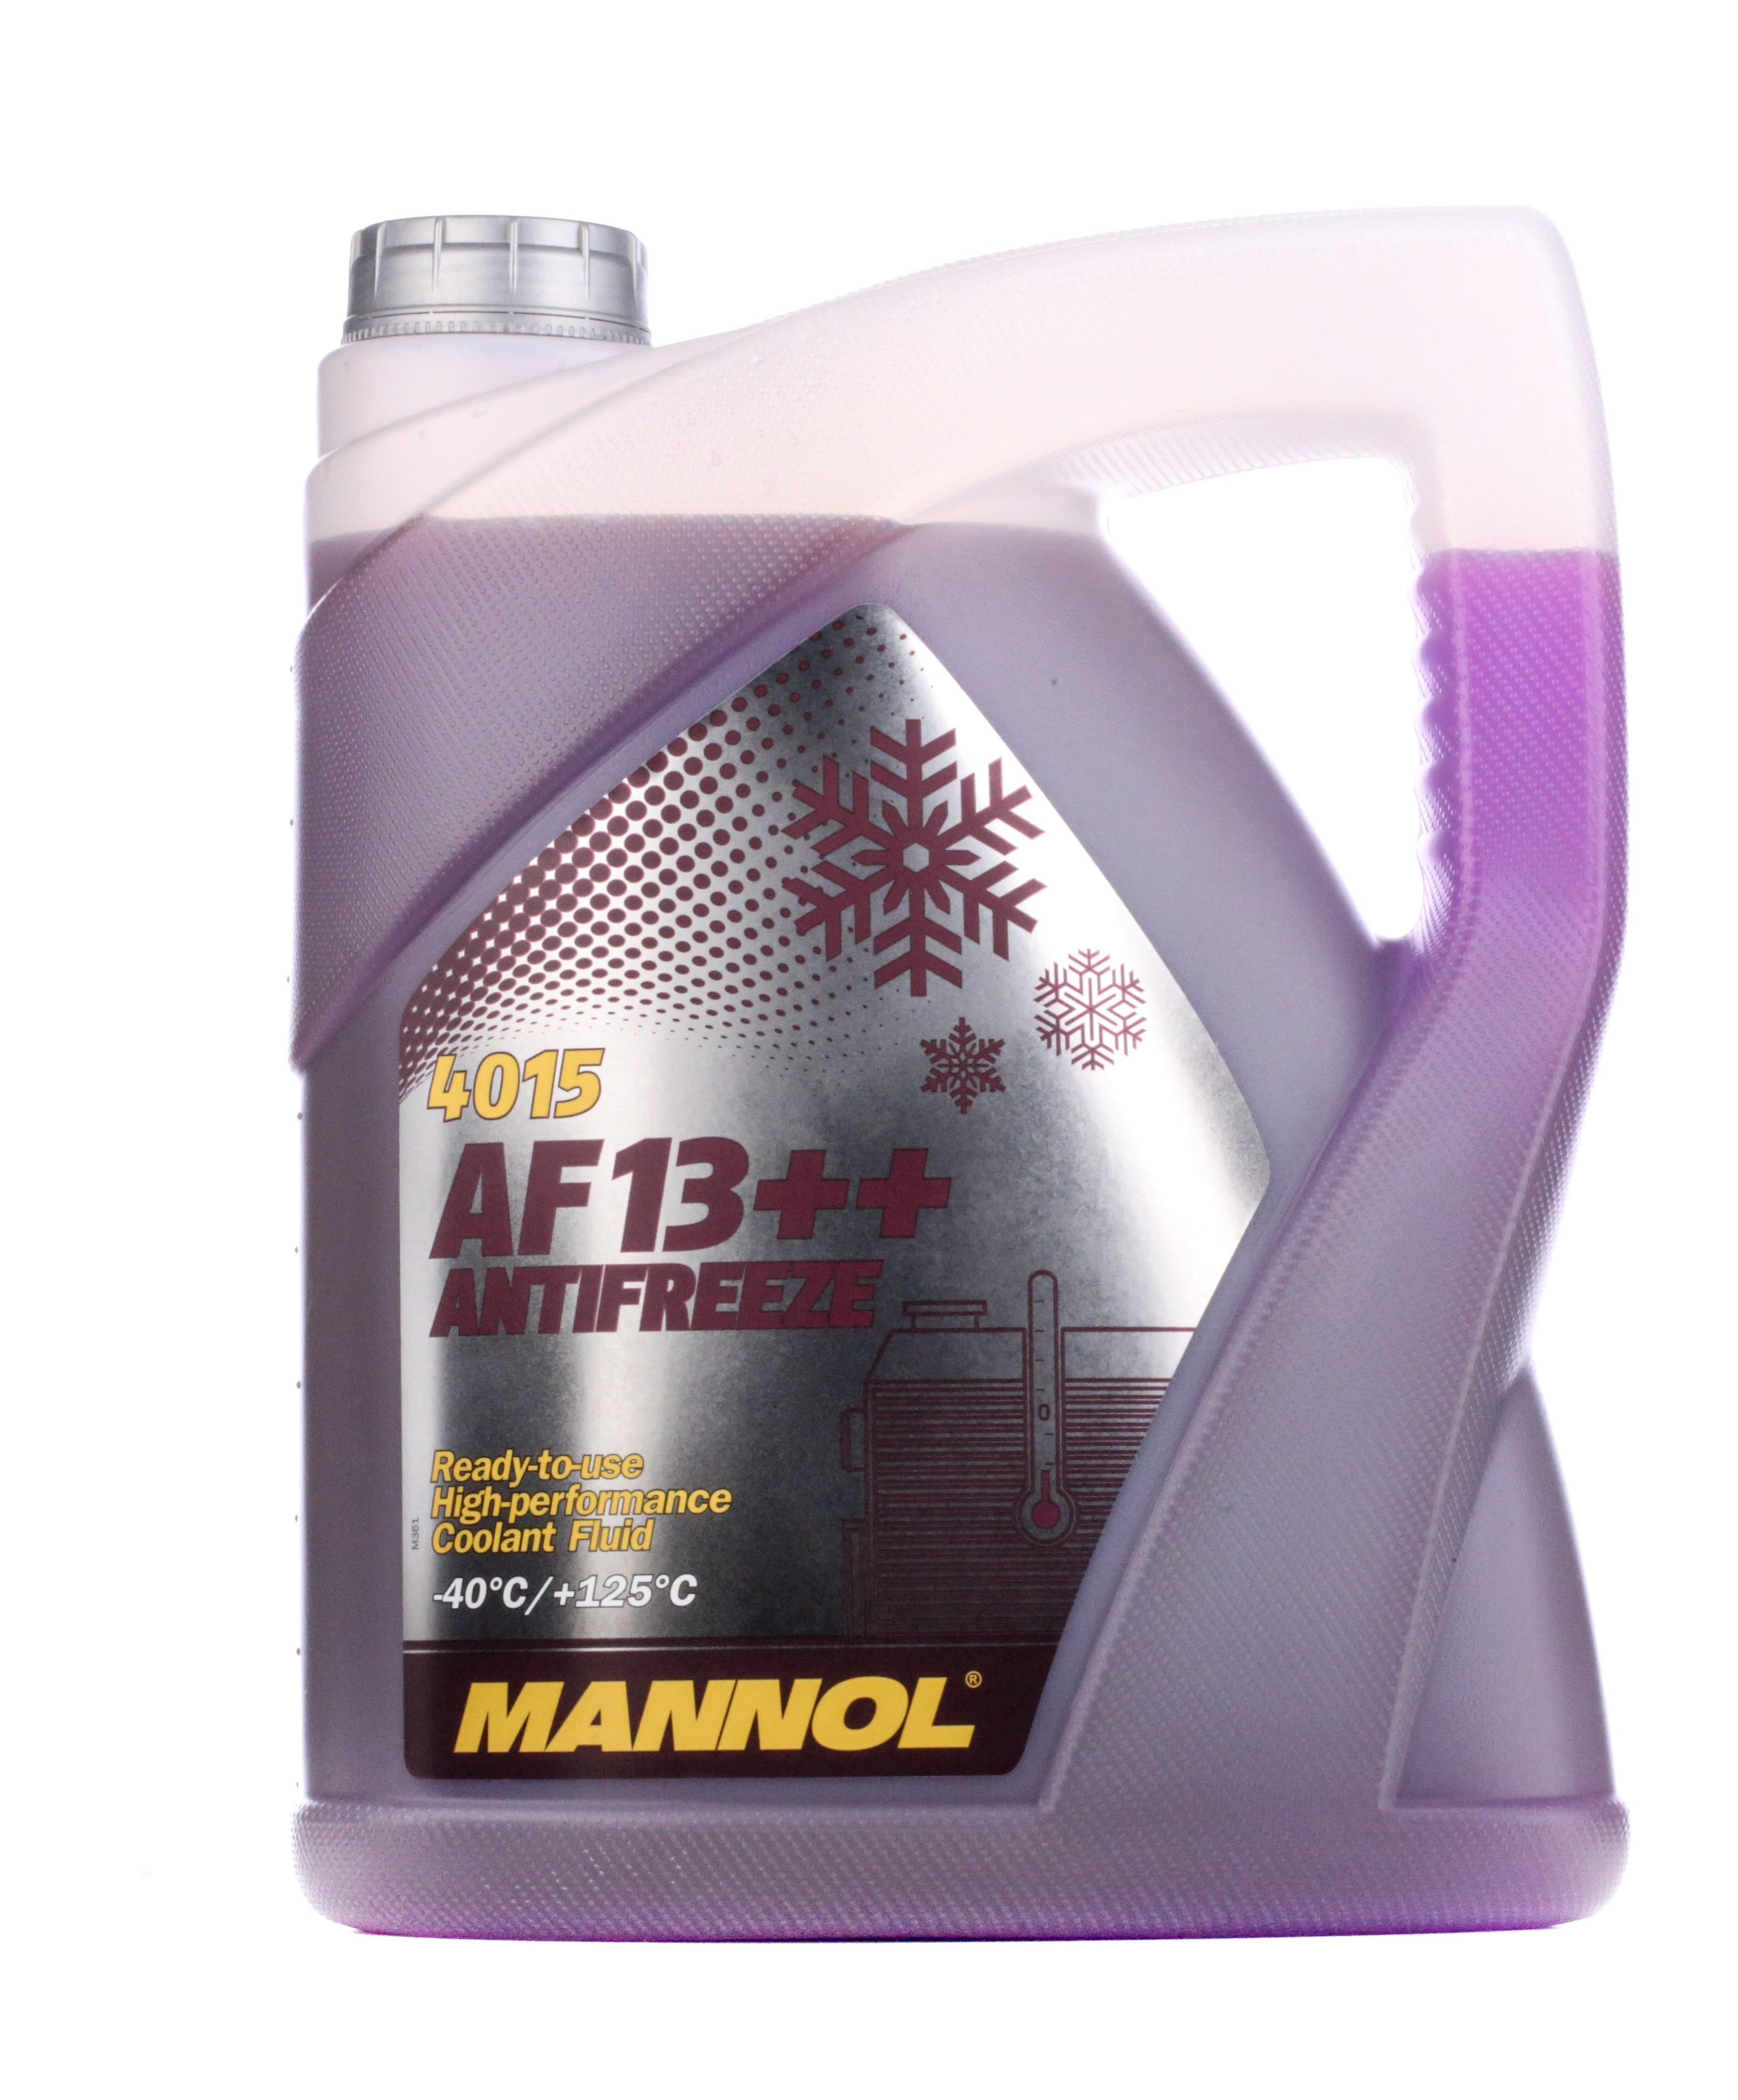 MANNOL AF13++, High-performance MN4015-5 Αντιψυκτικό G12 Kόκκινο, 5l